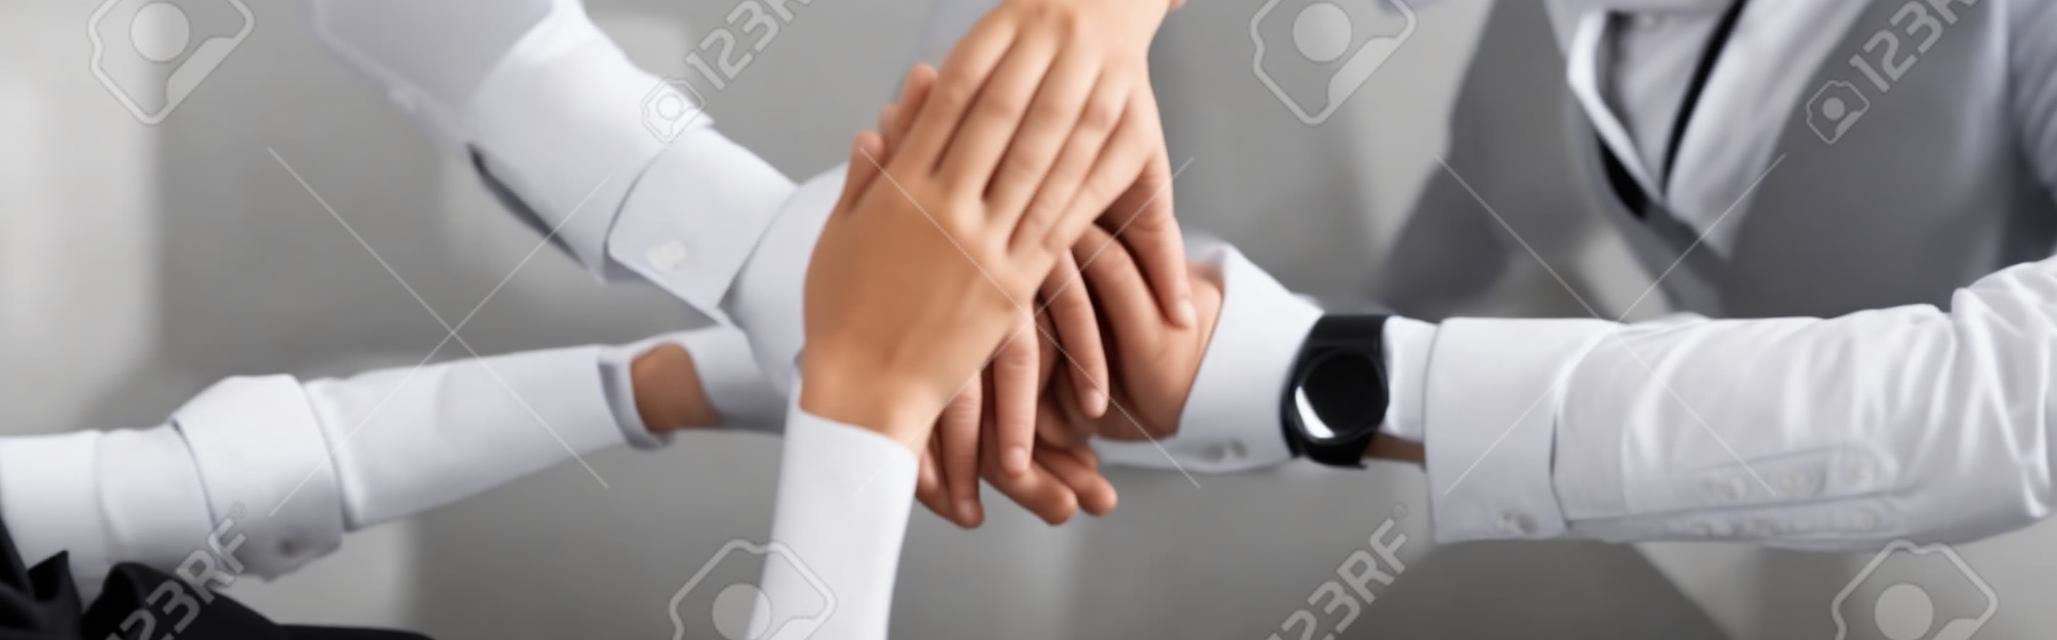 foto panorámica de empresarias y empresarios juntando las manos